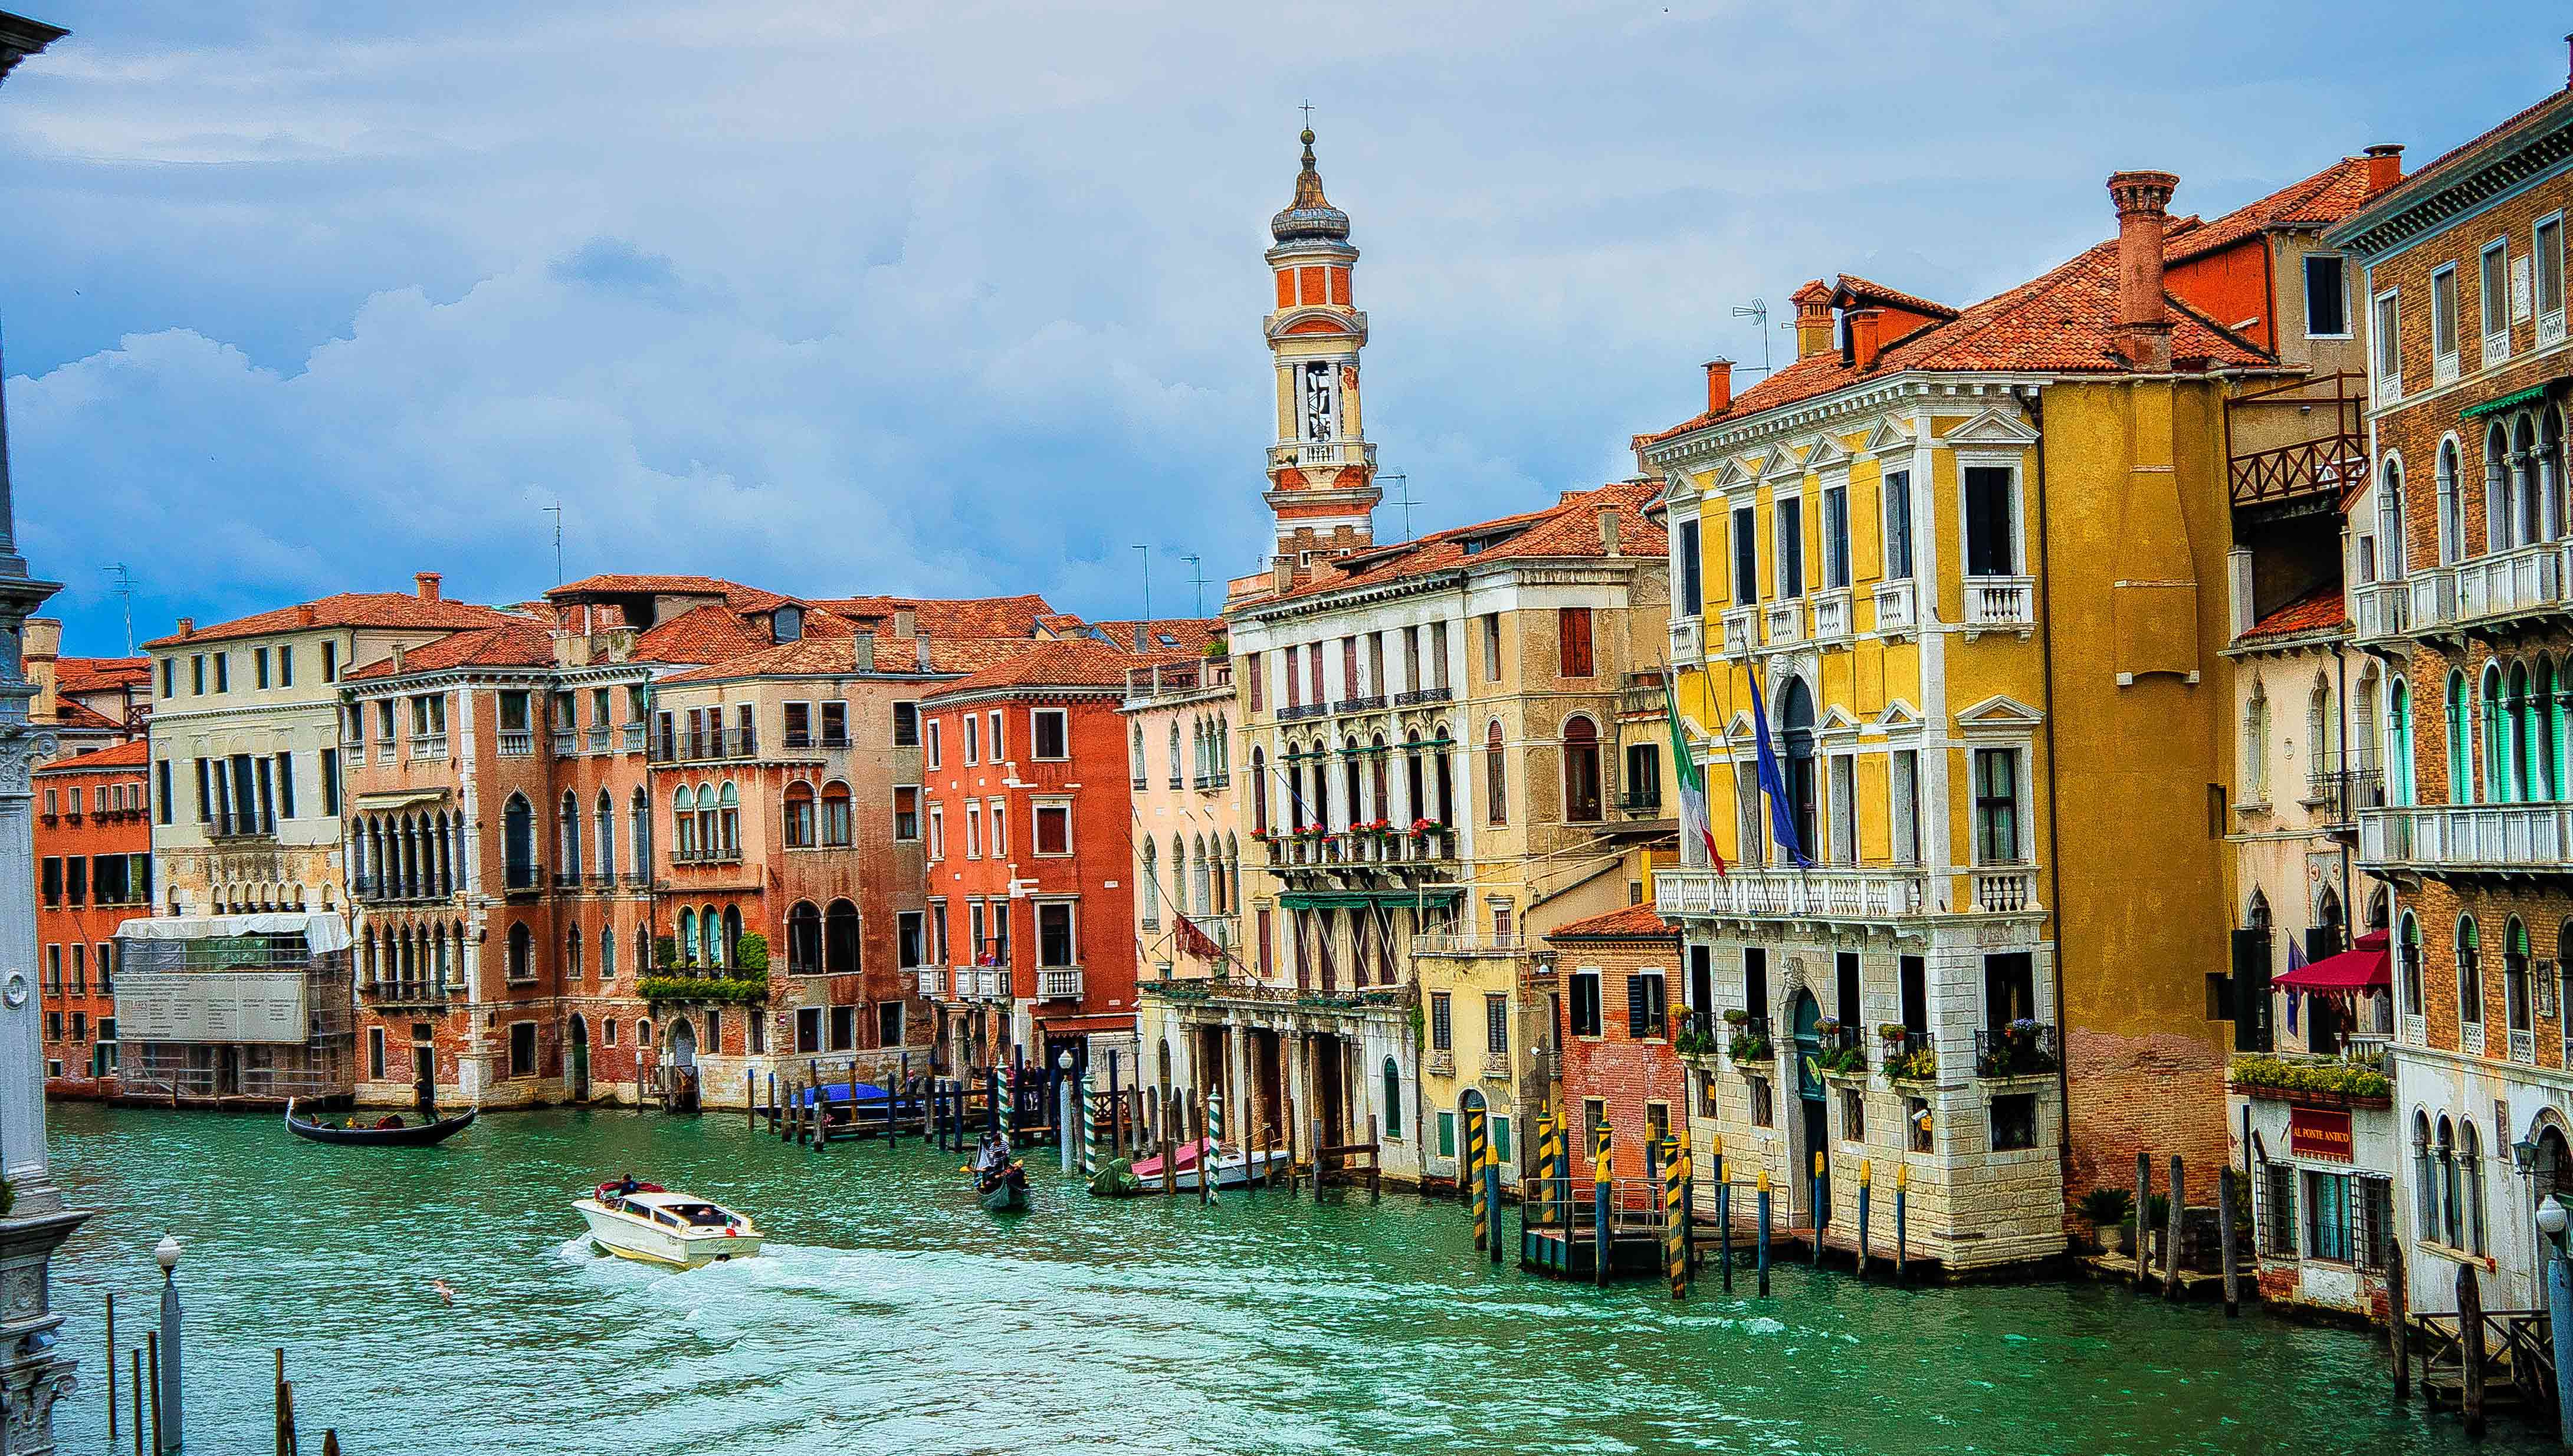 Die Landpartie: Venetien und die Biennale Arte